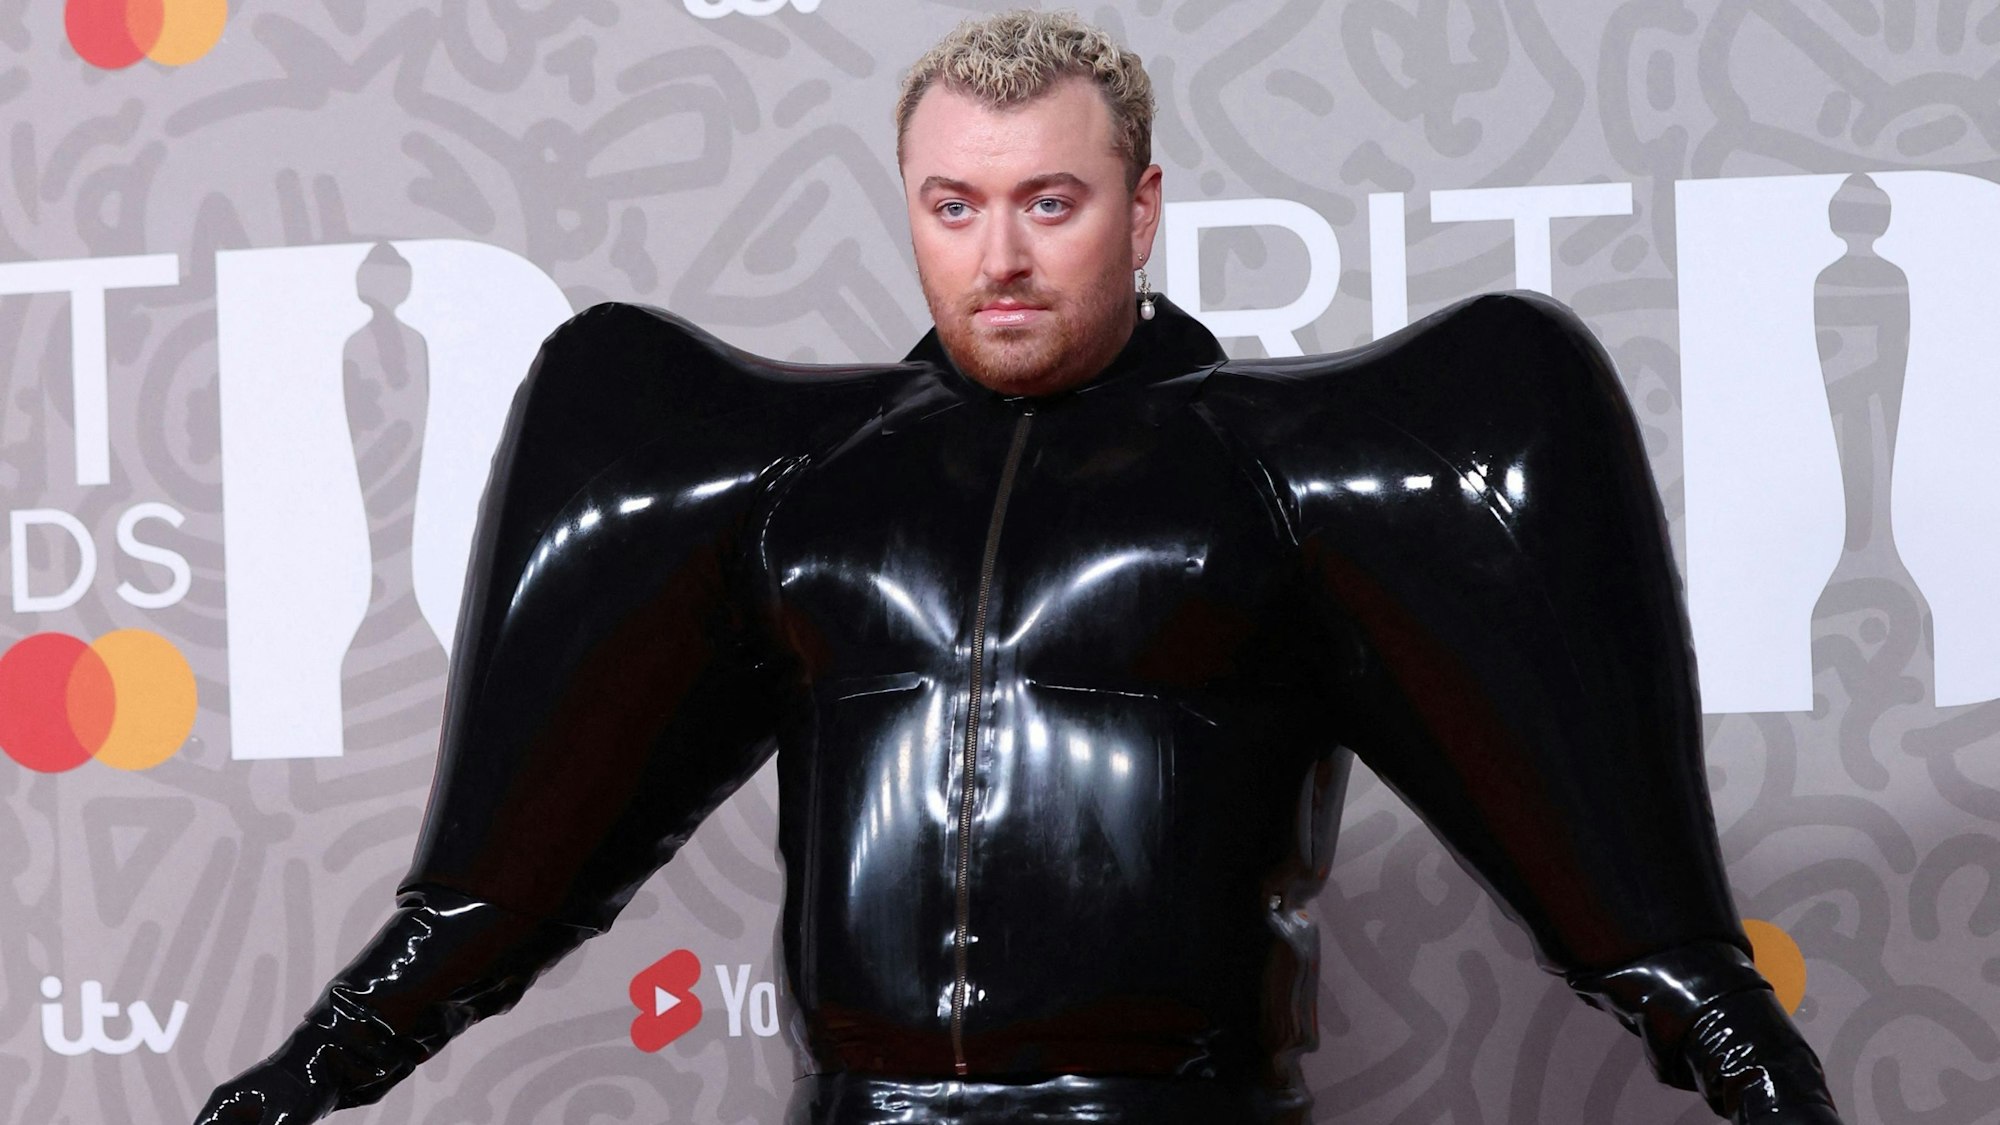 Sänger Sam Smith posiert im schwarzen Fantasy-Kostüm auf dem Roten Teppich bei den Brit Awards 2023